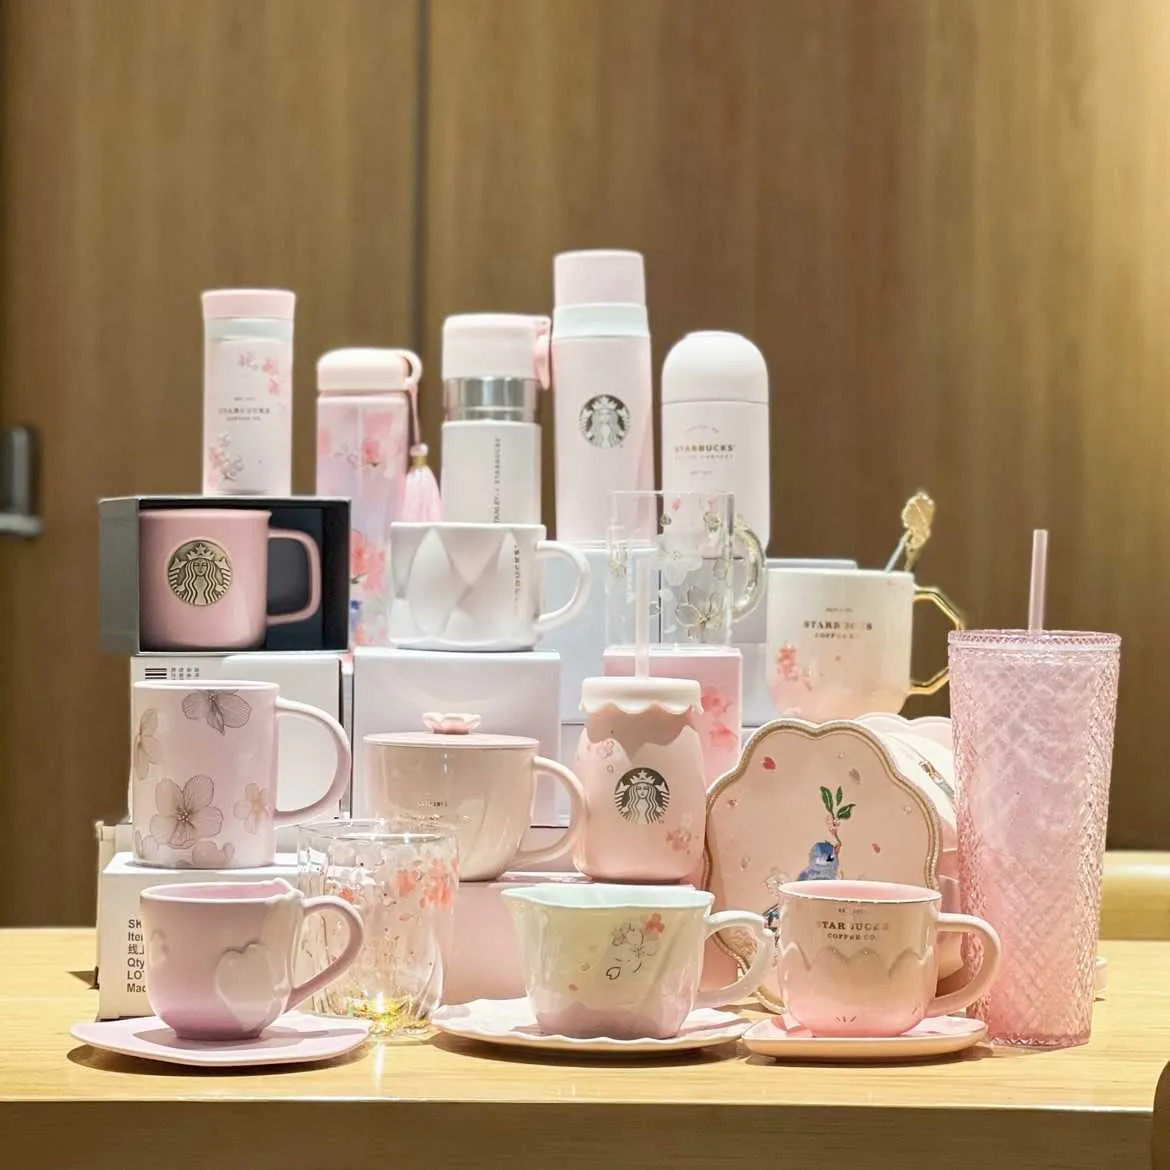 Starbucks 2022 elegante Cherry Blossom petali cadenti mug kangdick snack box thermos in paglia di vetro